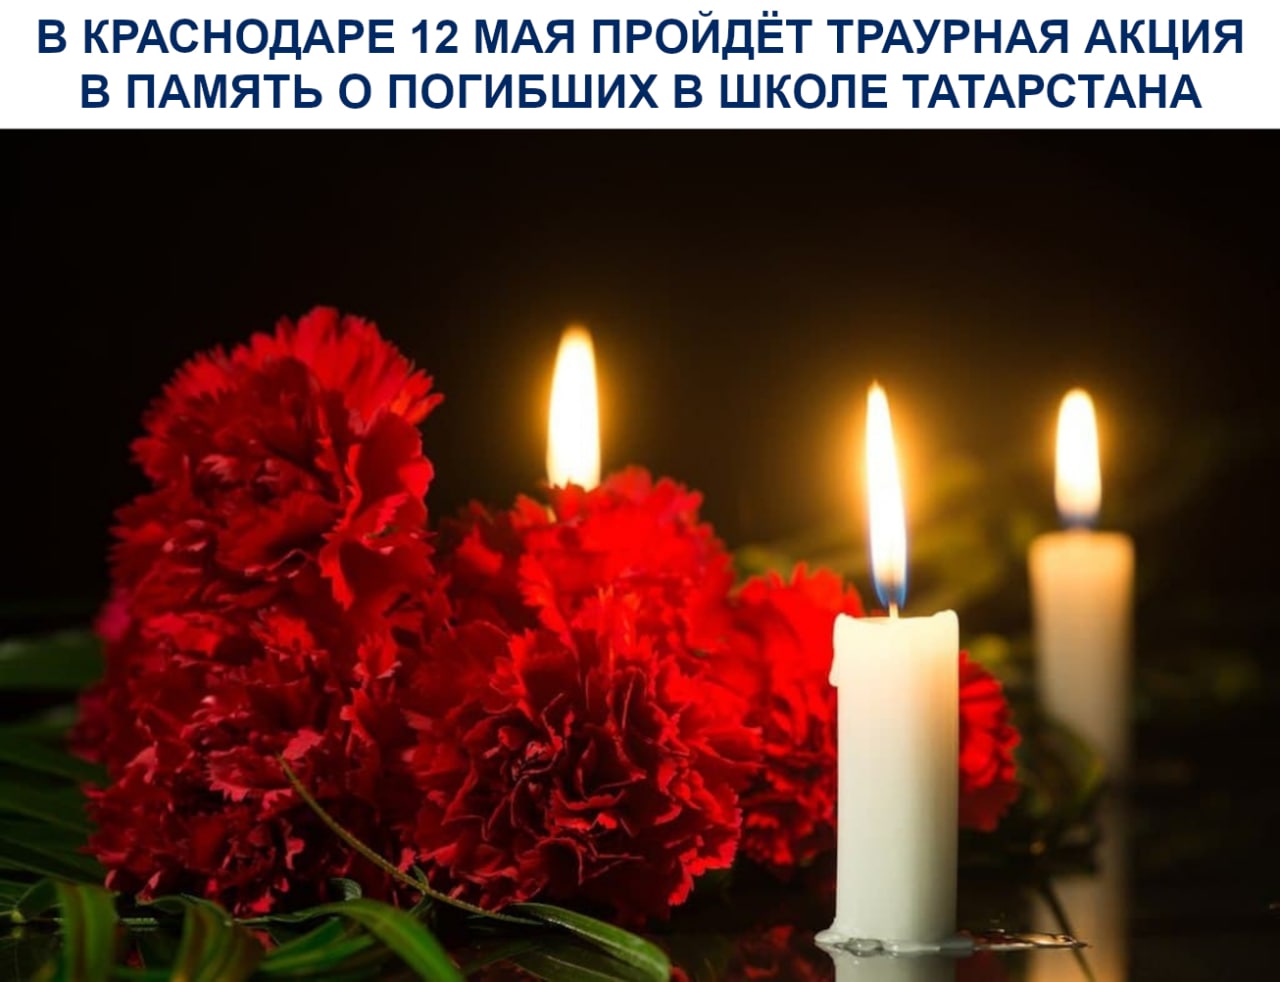 В Краснодаре 12 мая пройдёт траурная акция в память о погибших в школе Татарстана